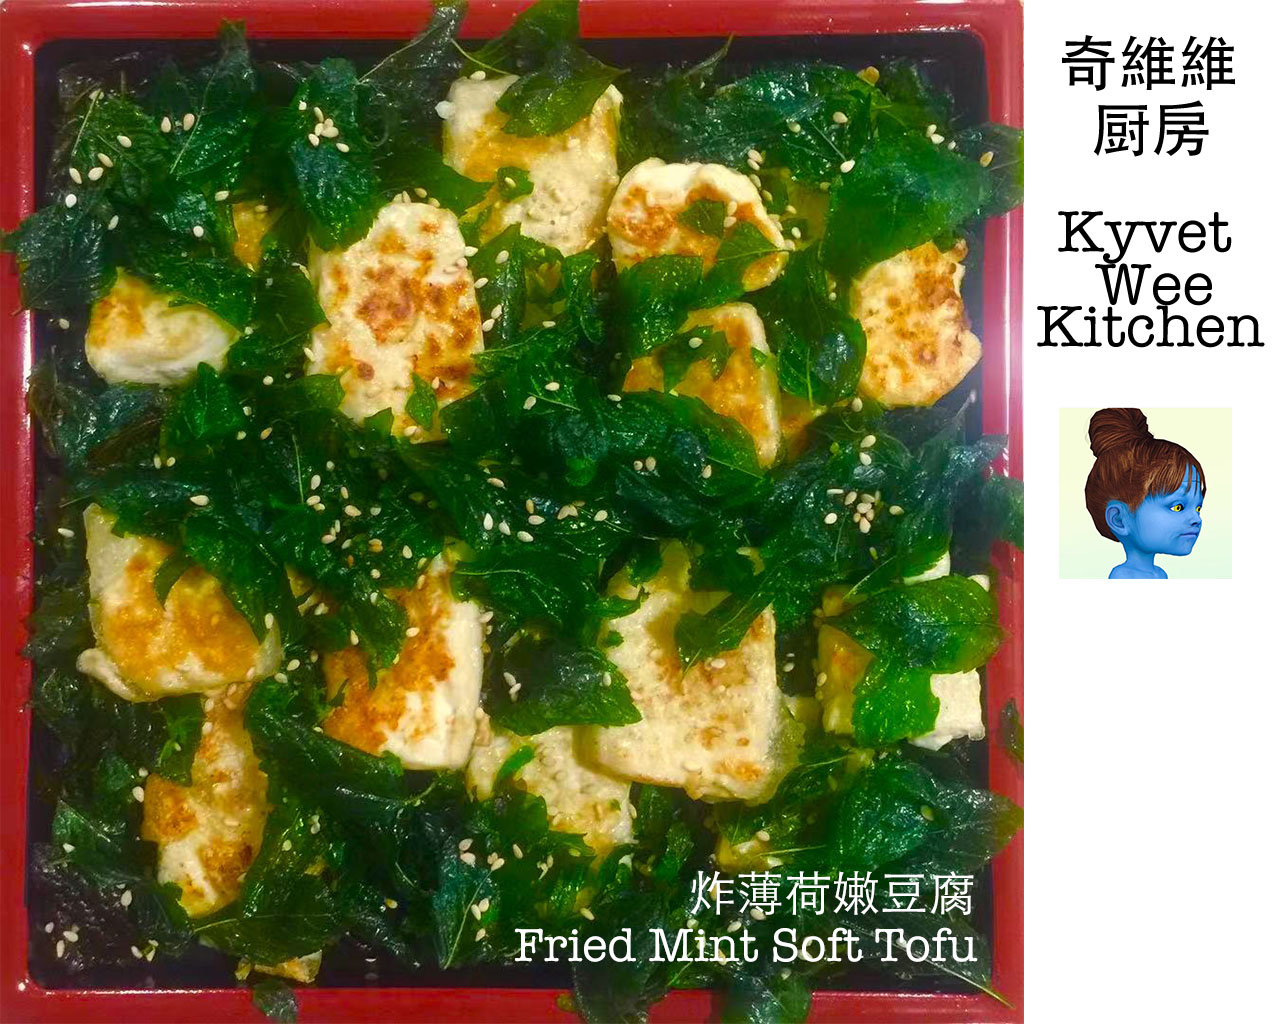 炸薄荷嫩豆腐 Fried Mint Soft Tofu的做法